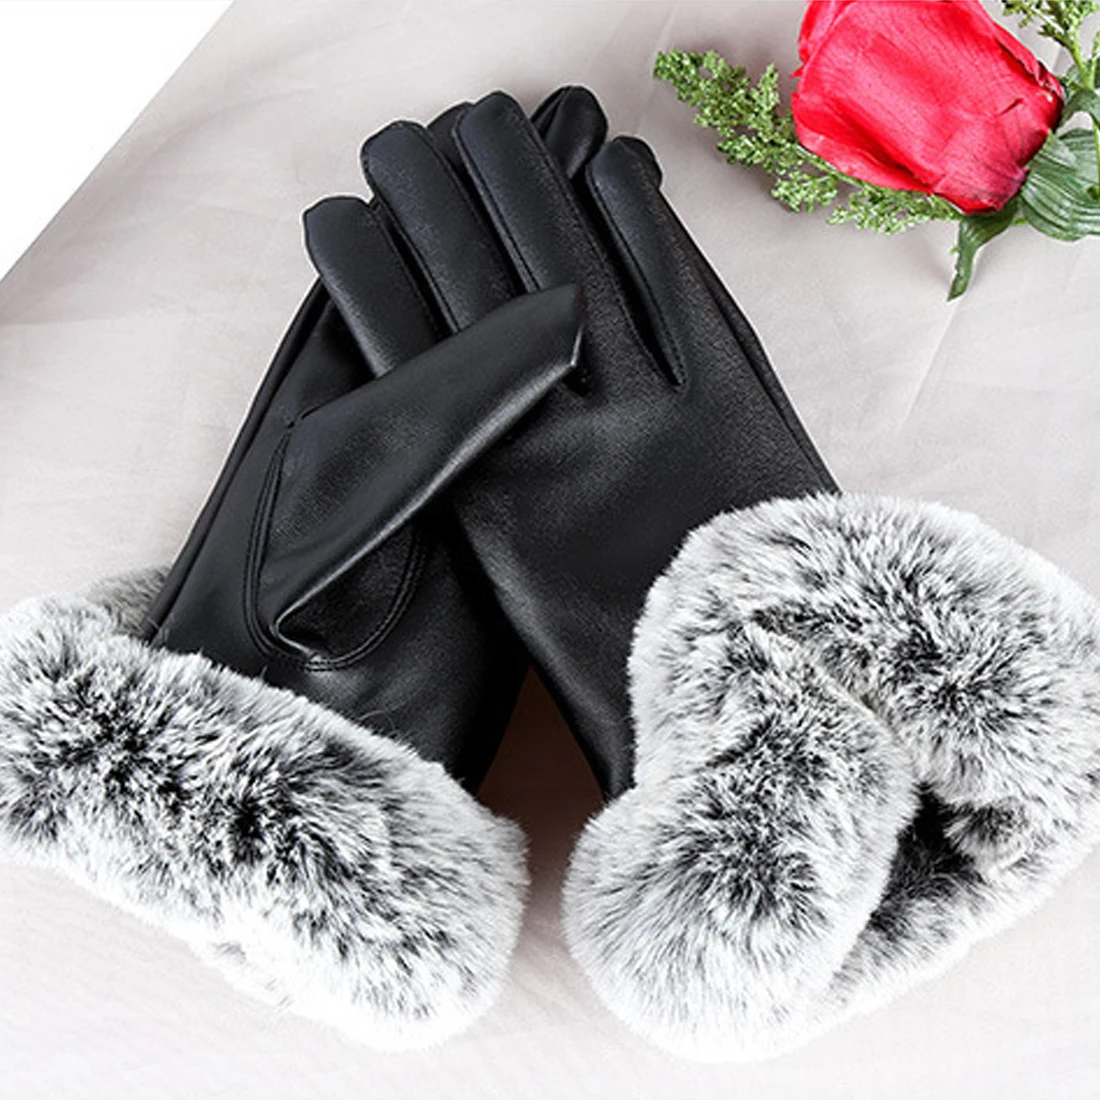 Горячая 1 пара Для женщин зимние теплые варежки Элегантный искусственного меха кролика PU кожаные перчатки для Зимние перчатки бренда